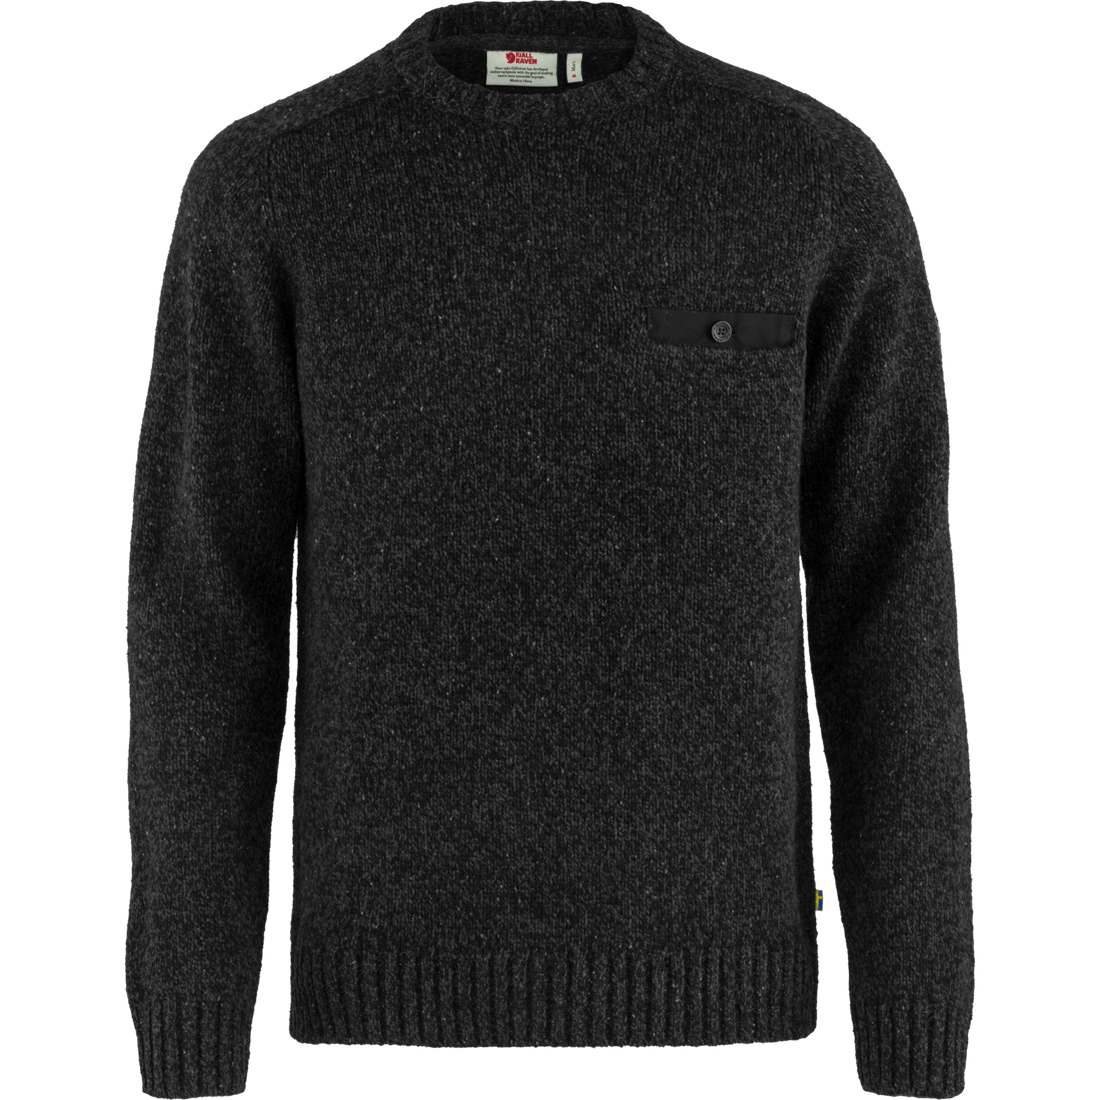 Lada Round-neck Sweater M